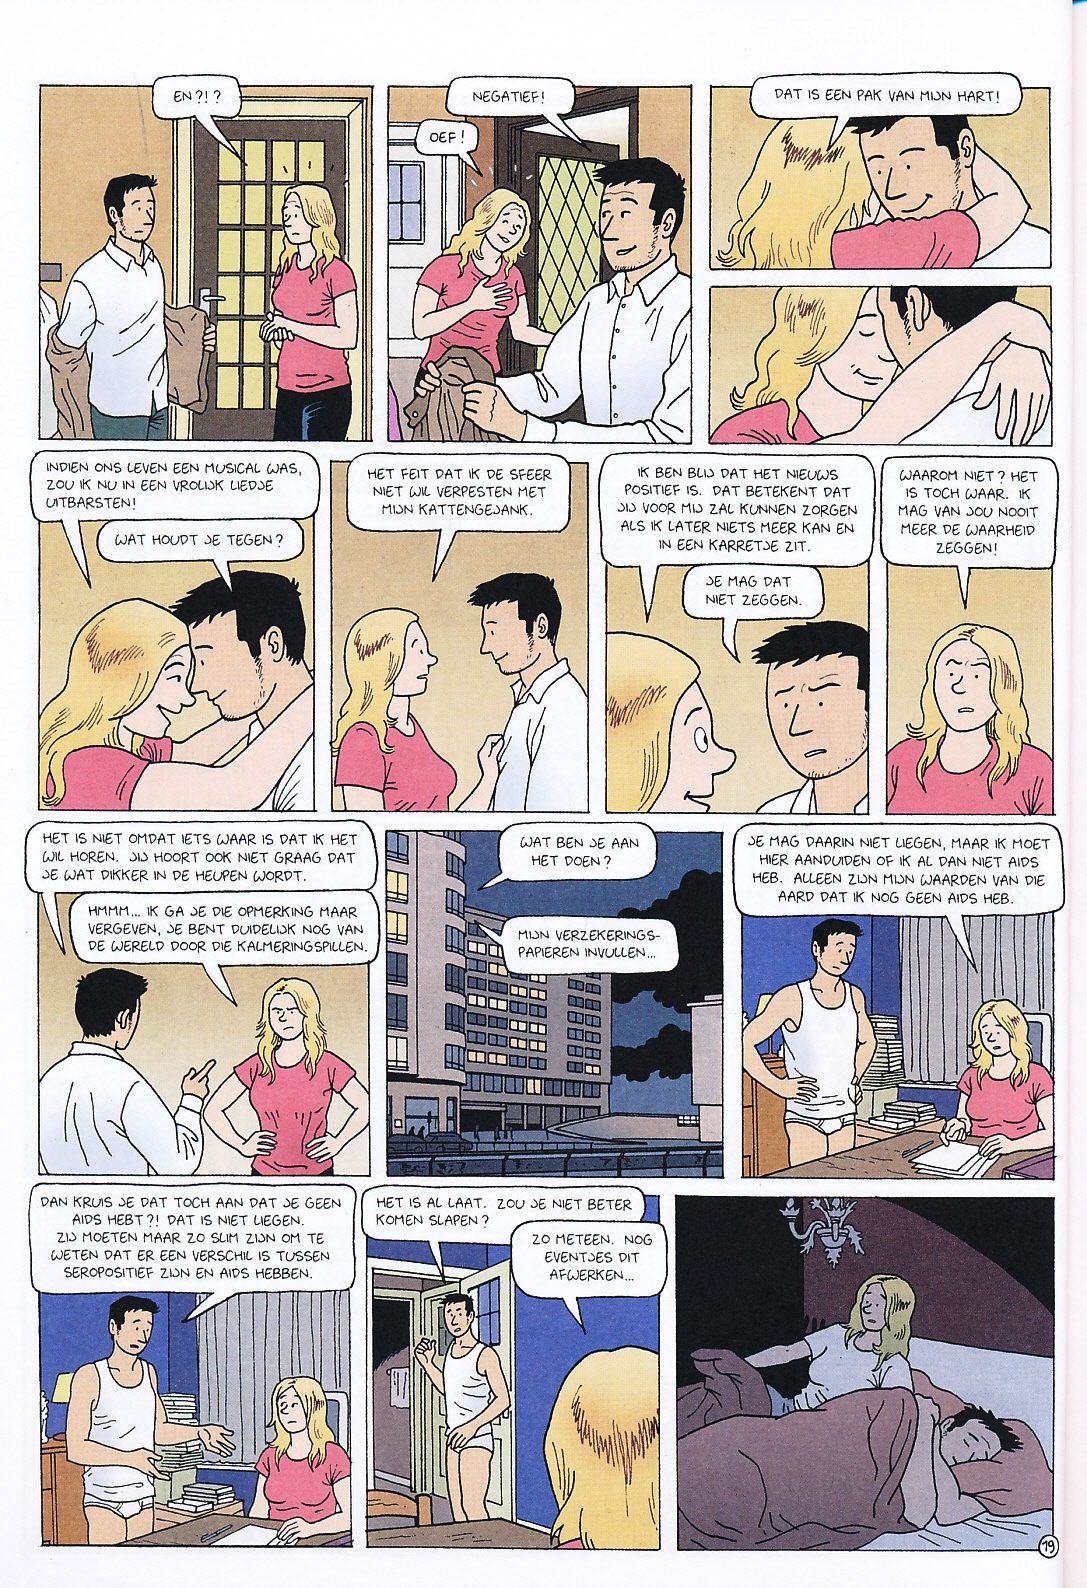 Positief (Dutch) Een wat serieuzer stripverhaal van Tom Bouden 21